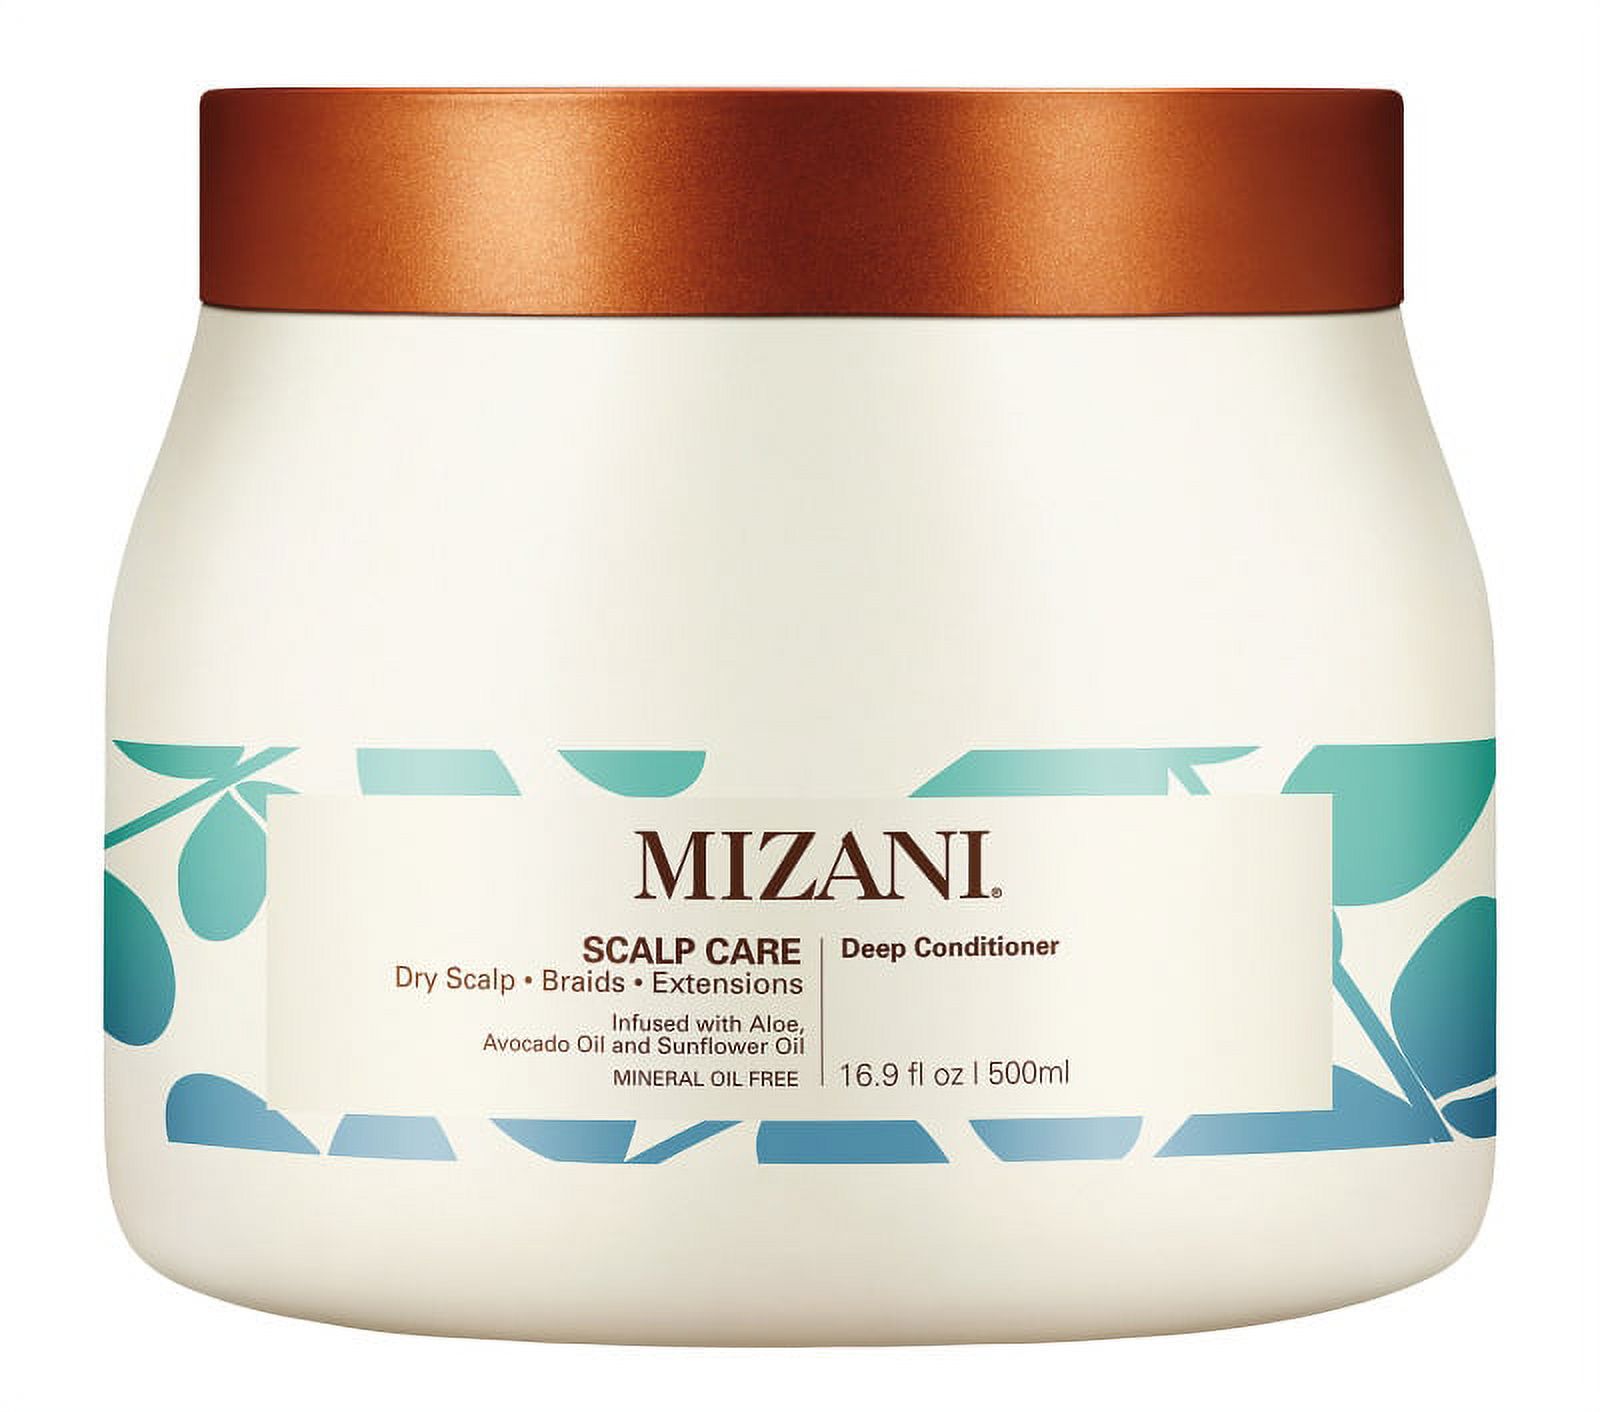 MIZANI Scalp Care & Dandruff Relief Deep Conditioner with Aloe, Avocado & Sunflower Oil, 16.9 fl oz - image 1 of 2